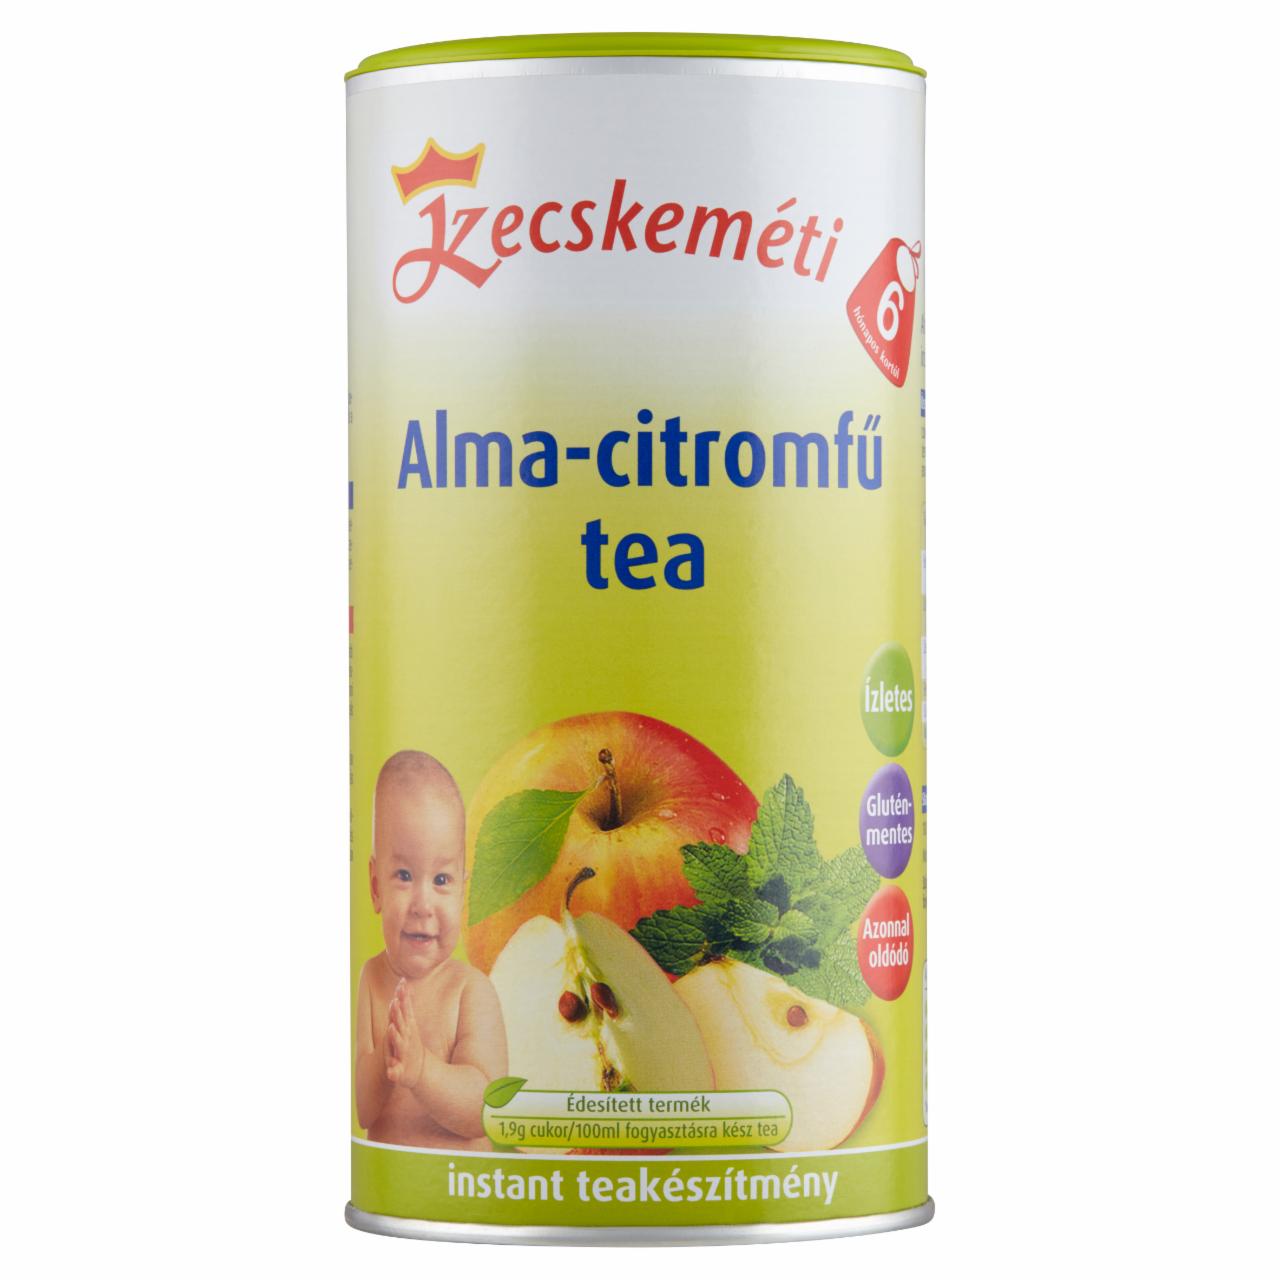 Képek - Kecskeméti alma-citromfű tea 6 hónapos kortól 200 g